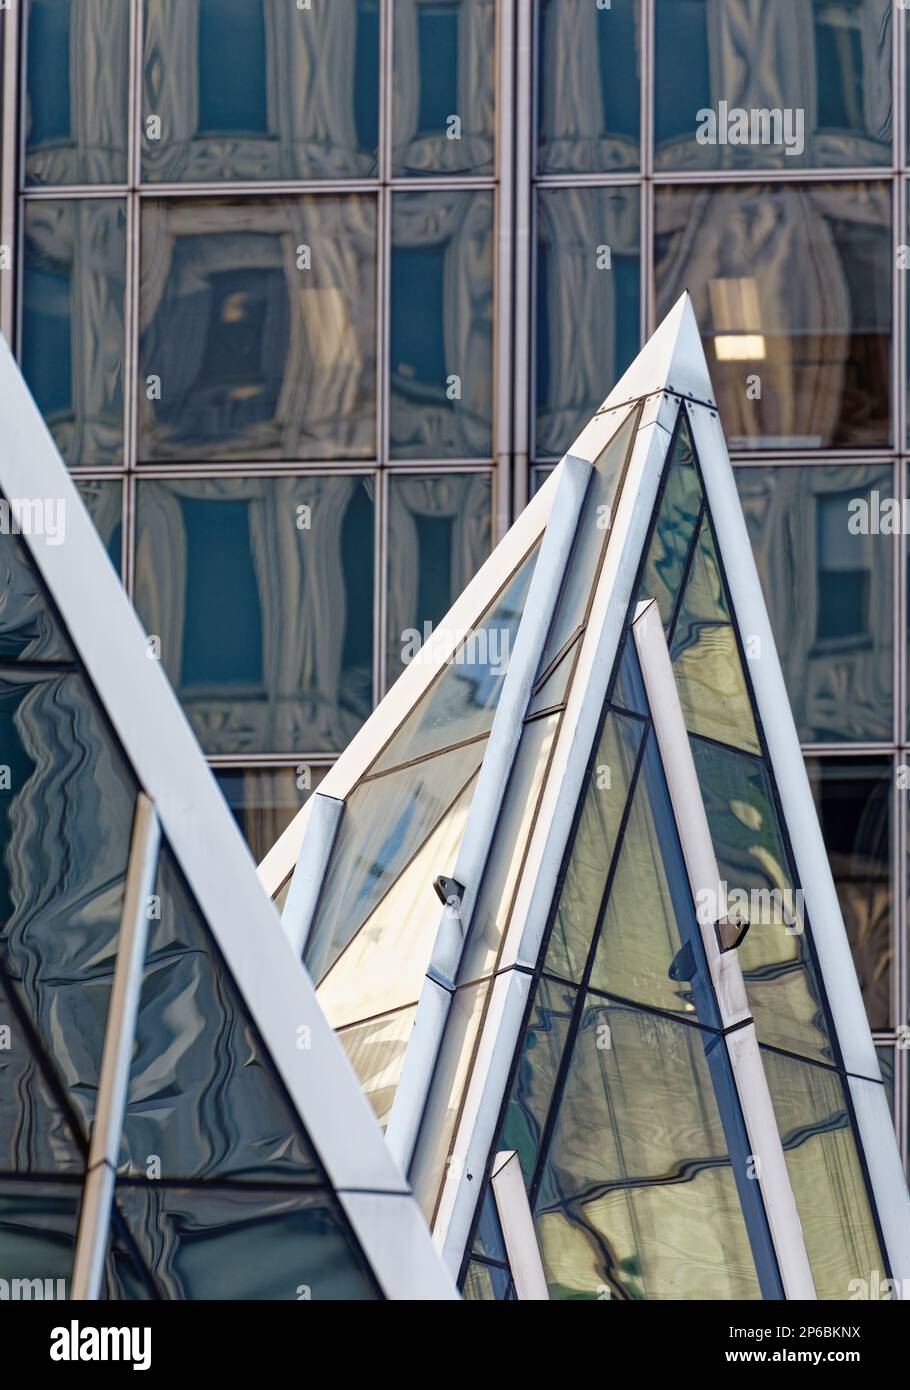 Chrysler Trylons, progettato dal maestro postmoderno Philip Johnson, è notevole per le sue piramidi di vetro con cornice in acciaio, mostrate qui contro la 666 Third Avenue. Foto Stock